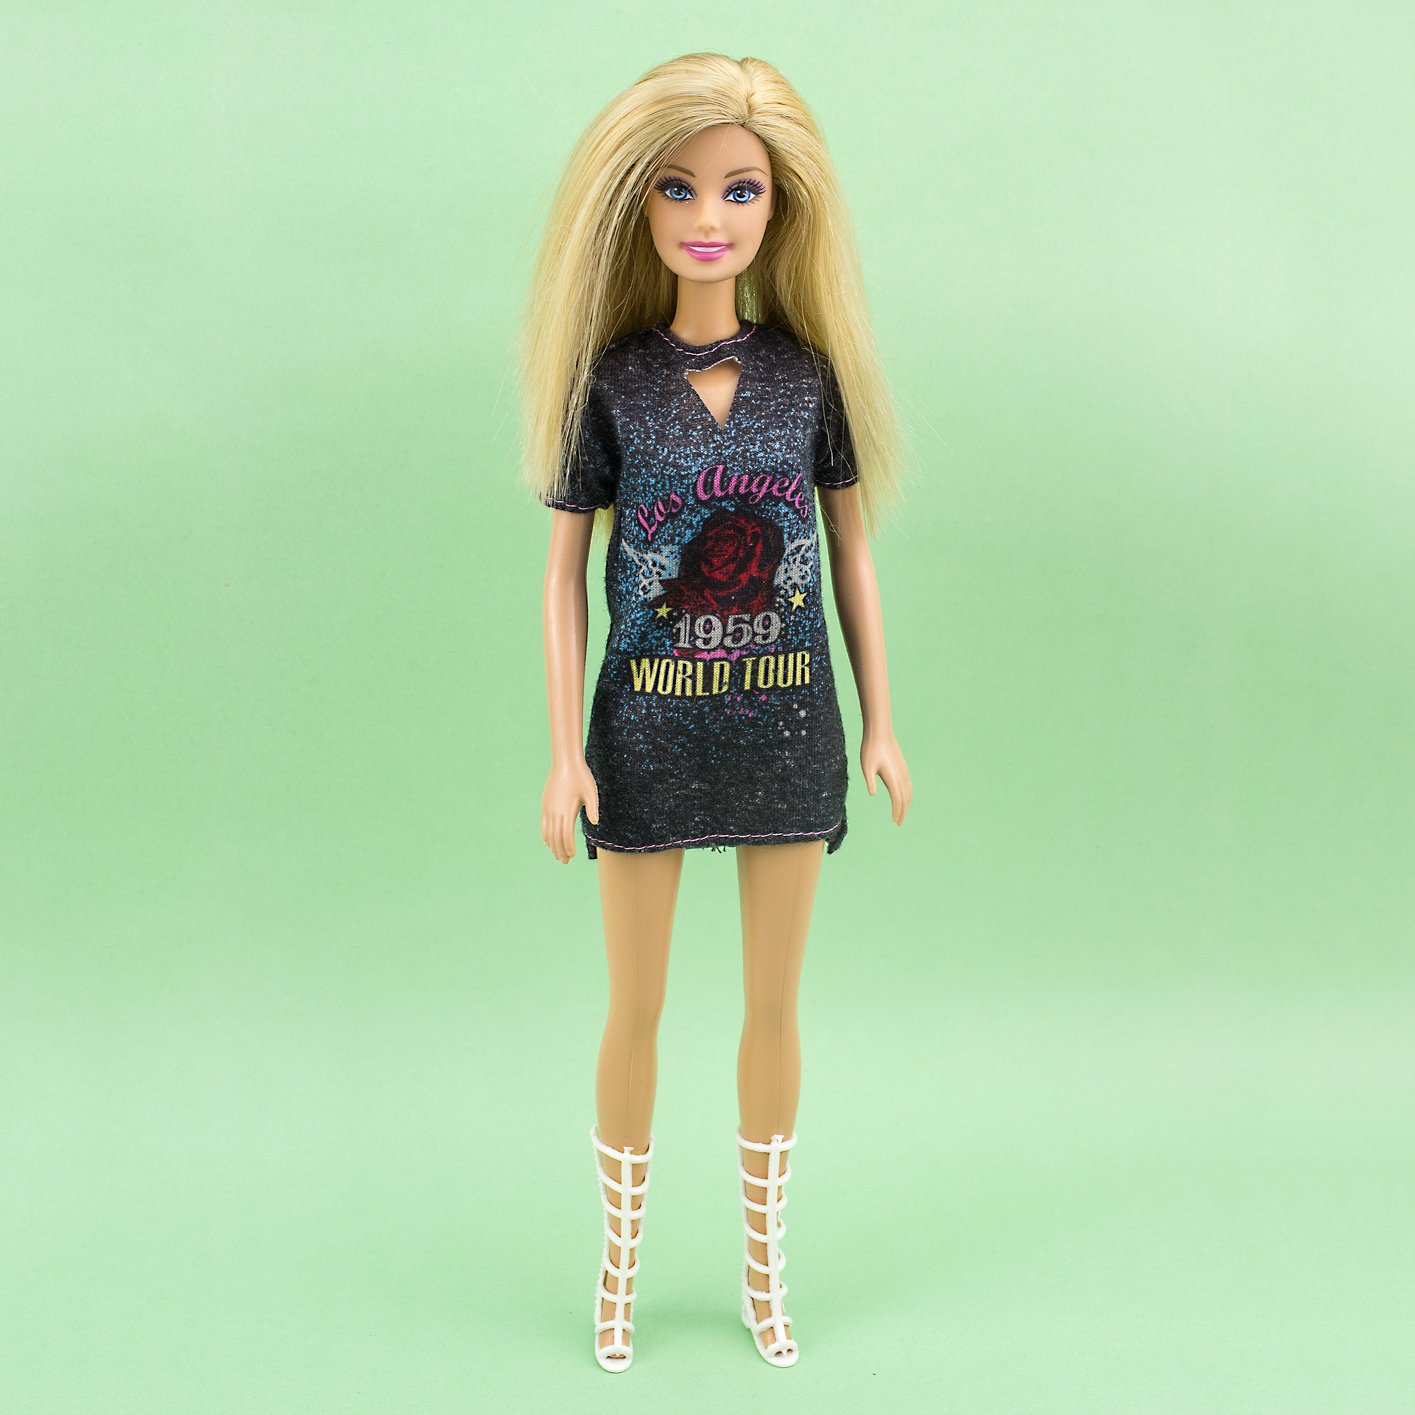 Boneca Barbie Vestido Cinza "Los Angeles" - Mattel (Removida da Caixa)